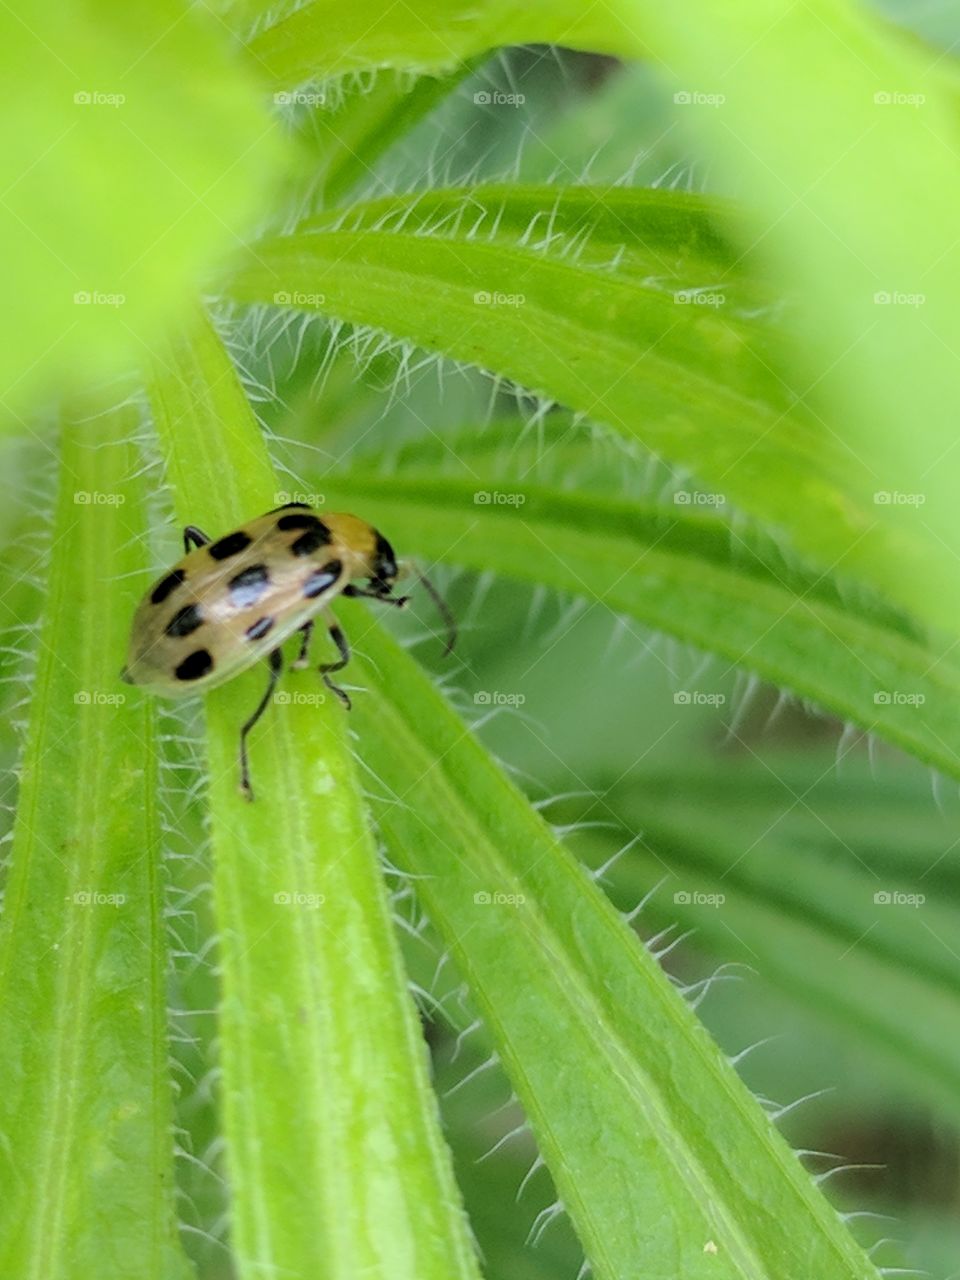 ladybug exploring